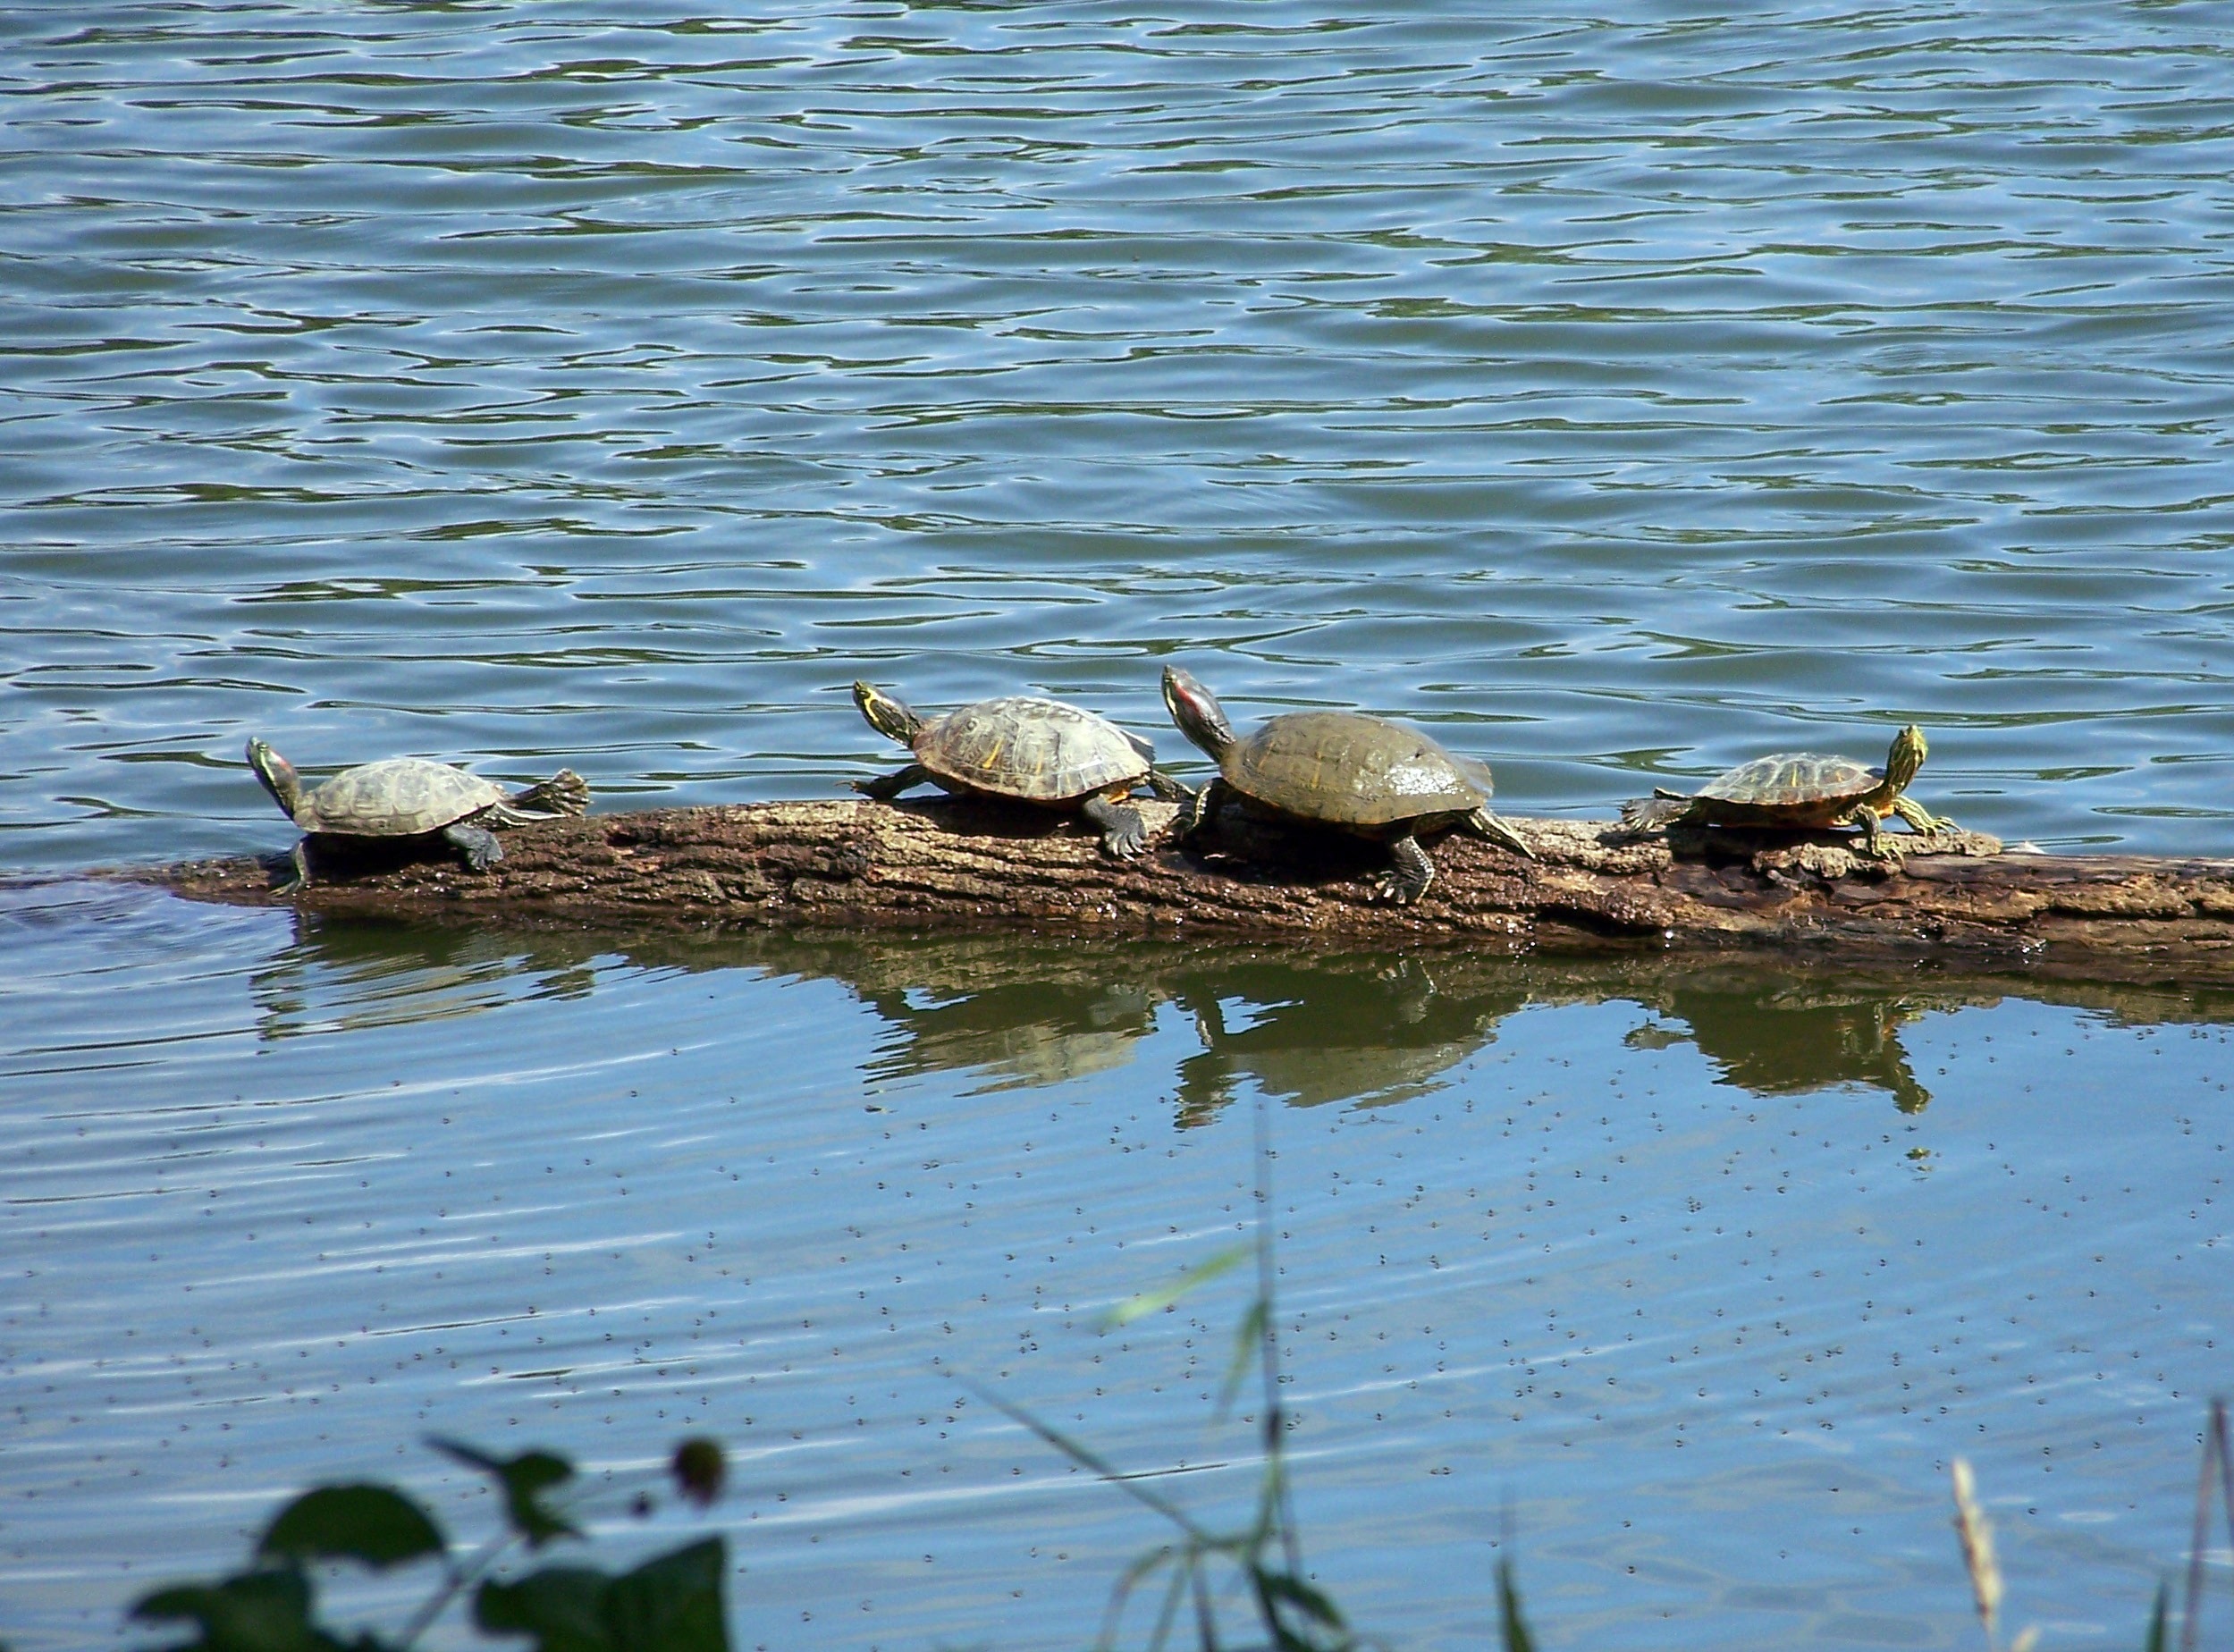 4 turtles